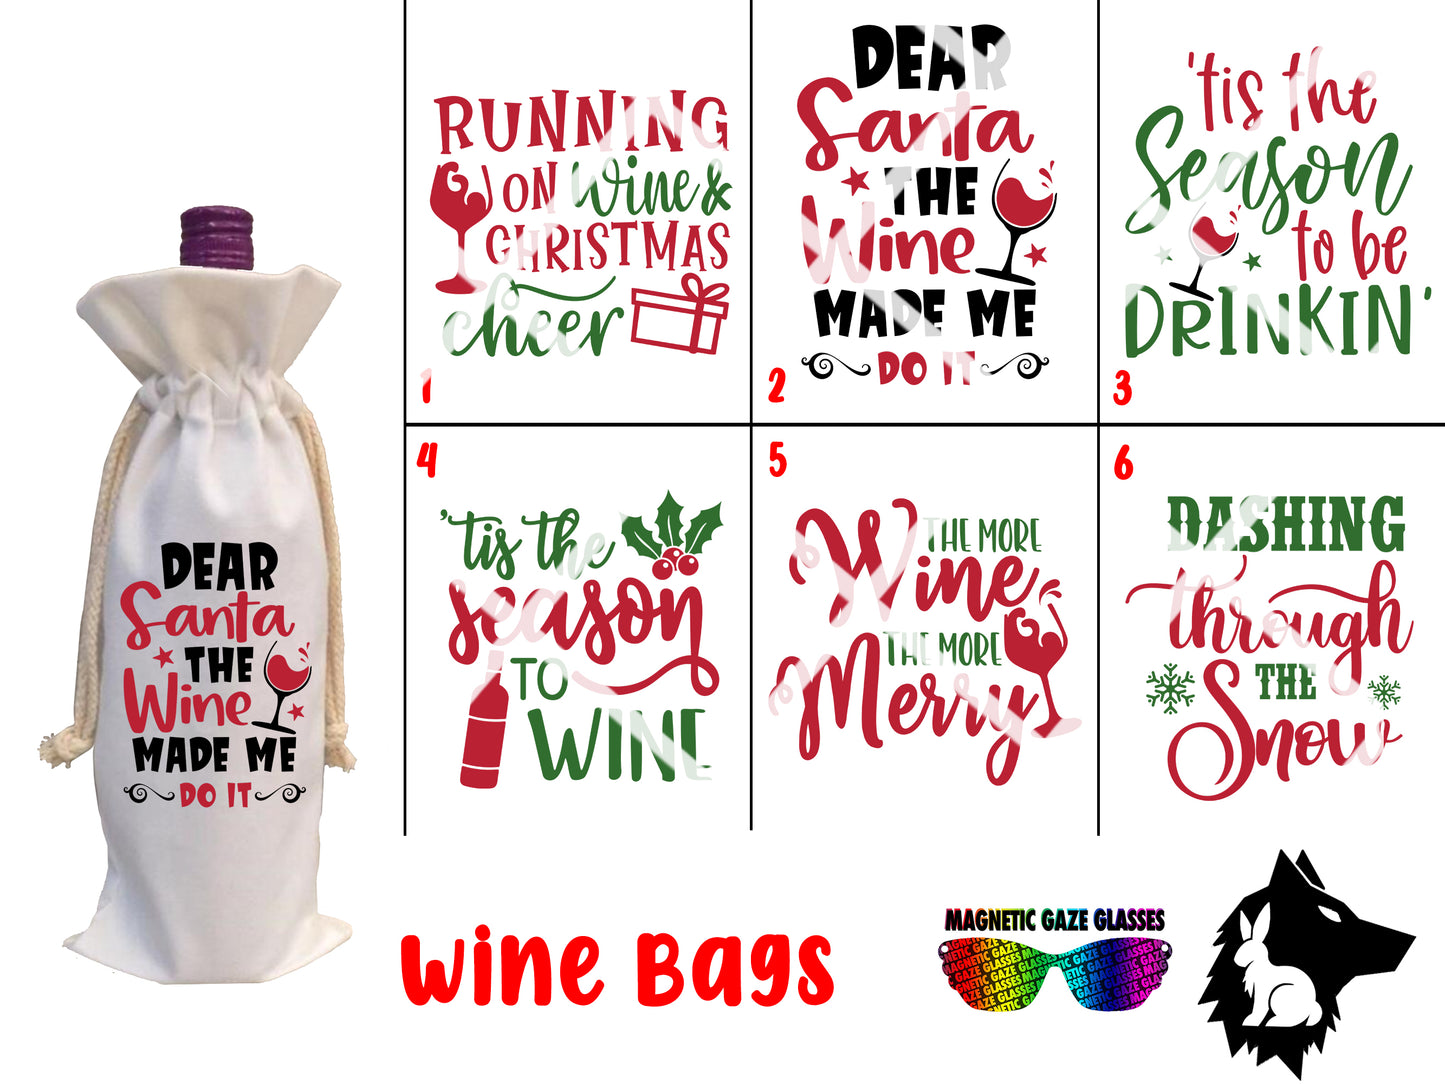 Wine Bag - (I) wine bag gift, gift for boss, gift for employee, gift for family, bag, custom, Christmas gift, xmas gift, gift, custom gift, customized gift, alcohol, bottle of wine bag, bottle of wine, spirits